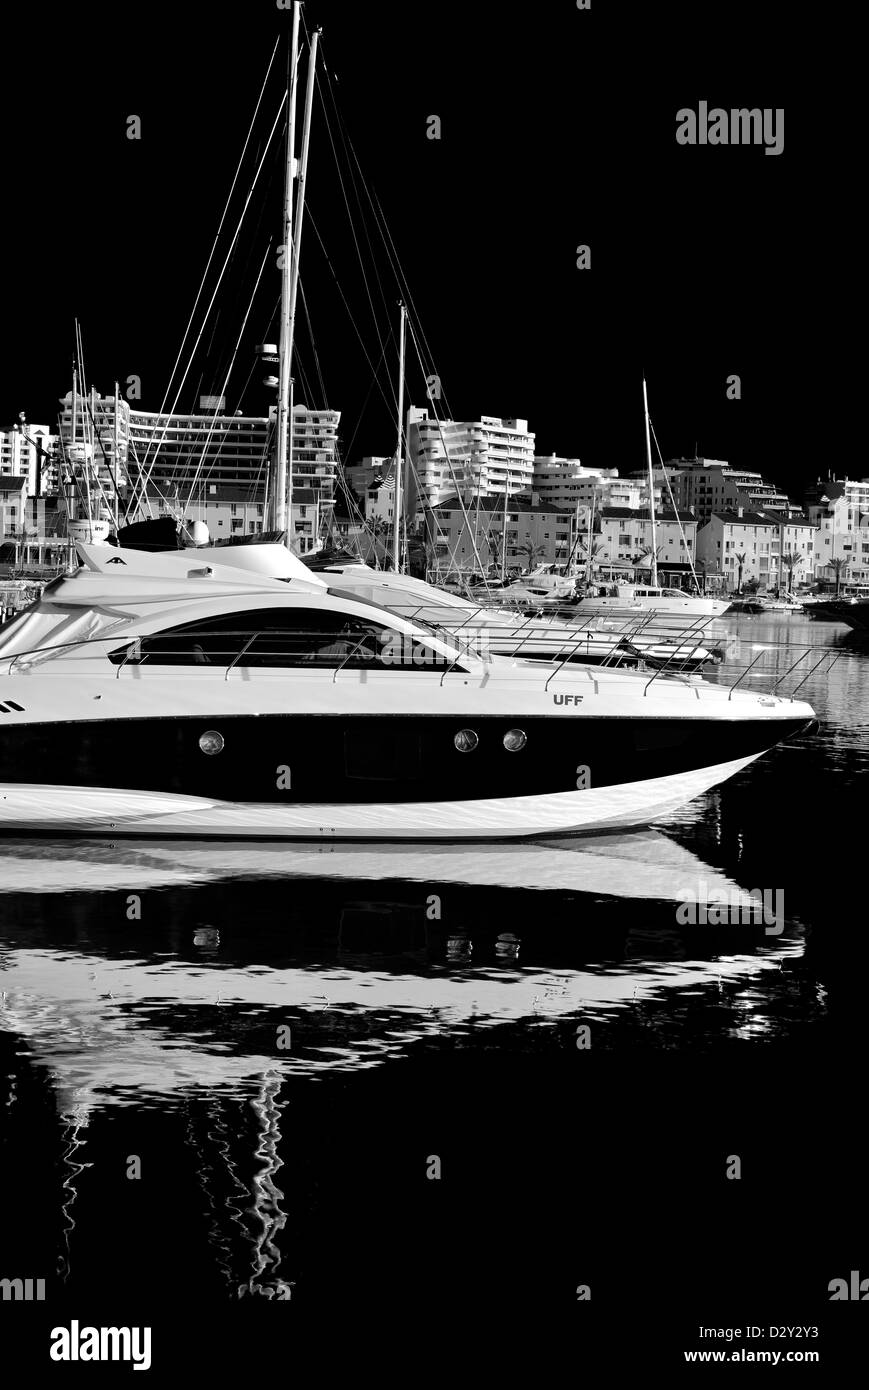 Le Portugal, l'Algarve : image en noir et blanc du port de plaisance de Vilamoura Banque D'Images